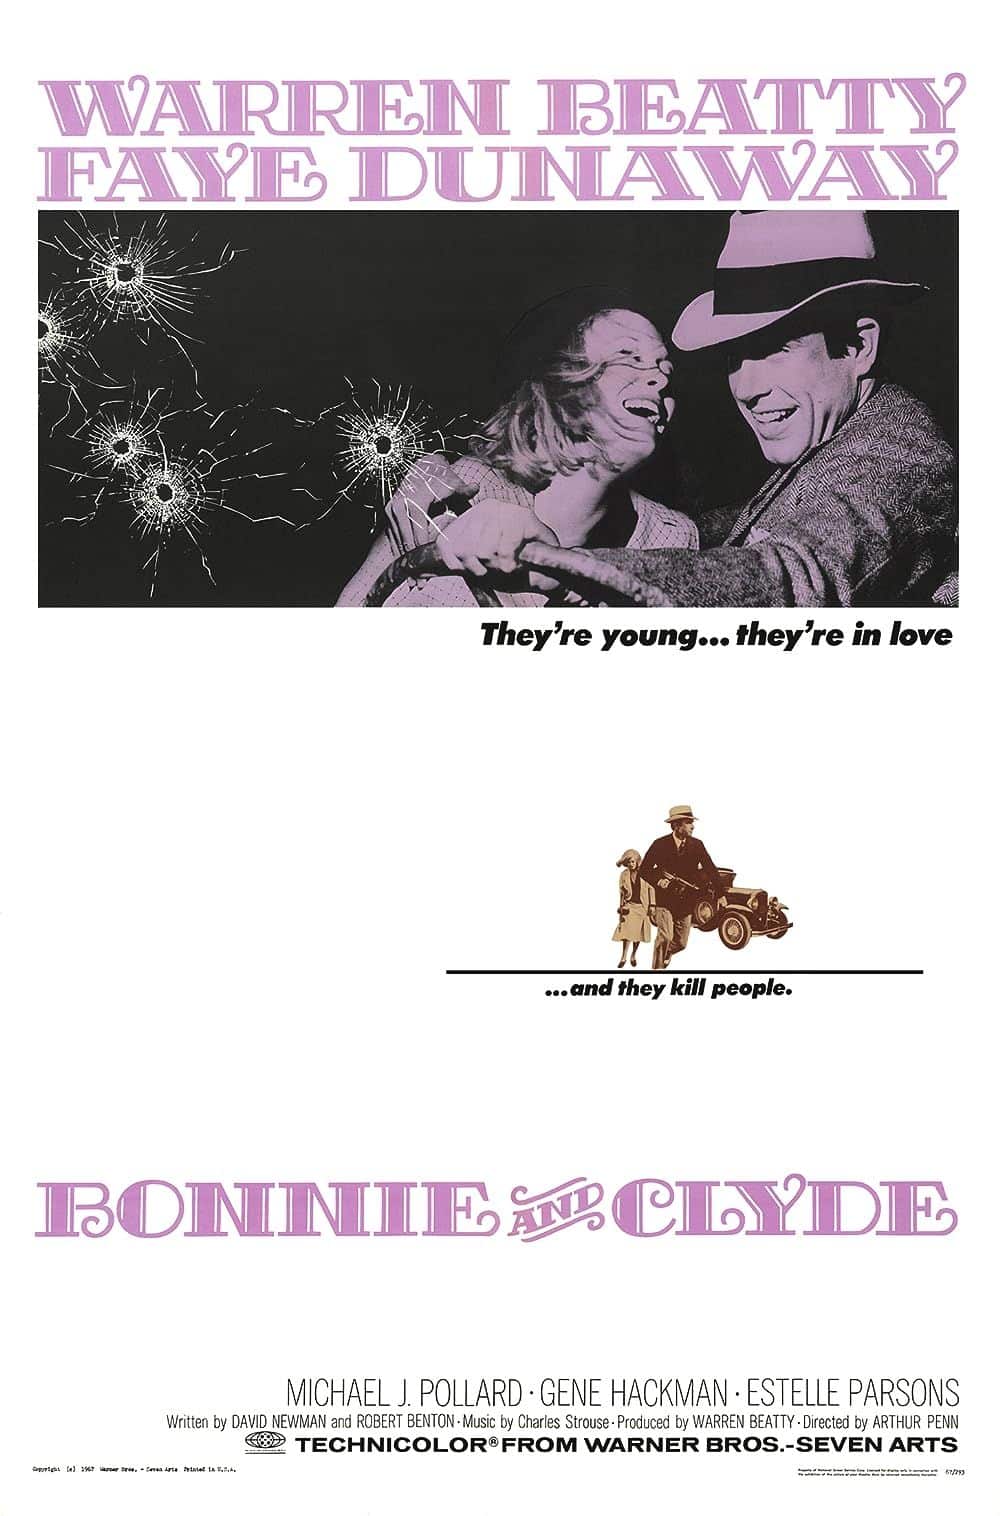 El póster de Bonnie y Clyde, que muestra a Bonnie y Clyde conduciendo un automóvil mientras les disparan.